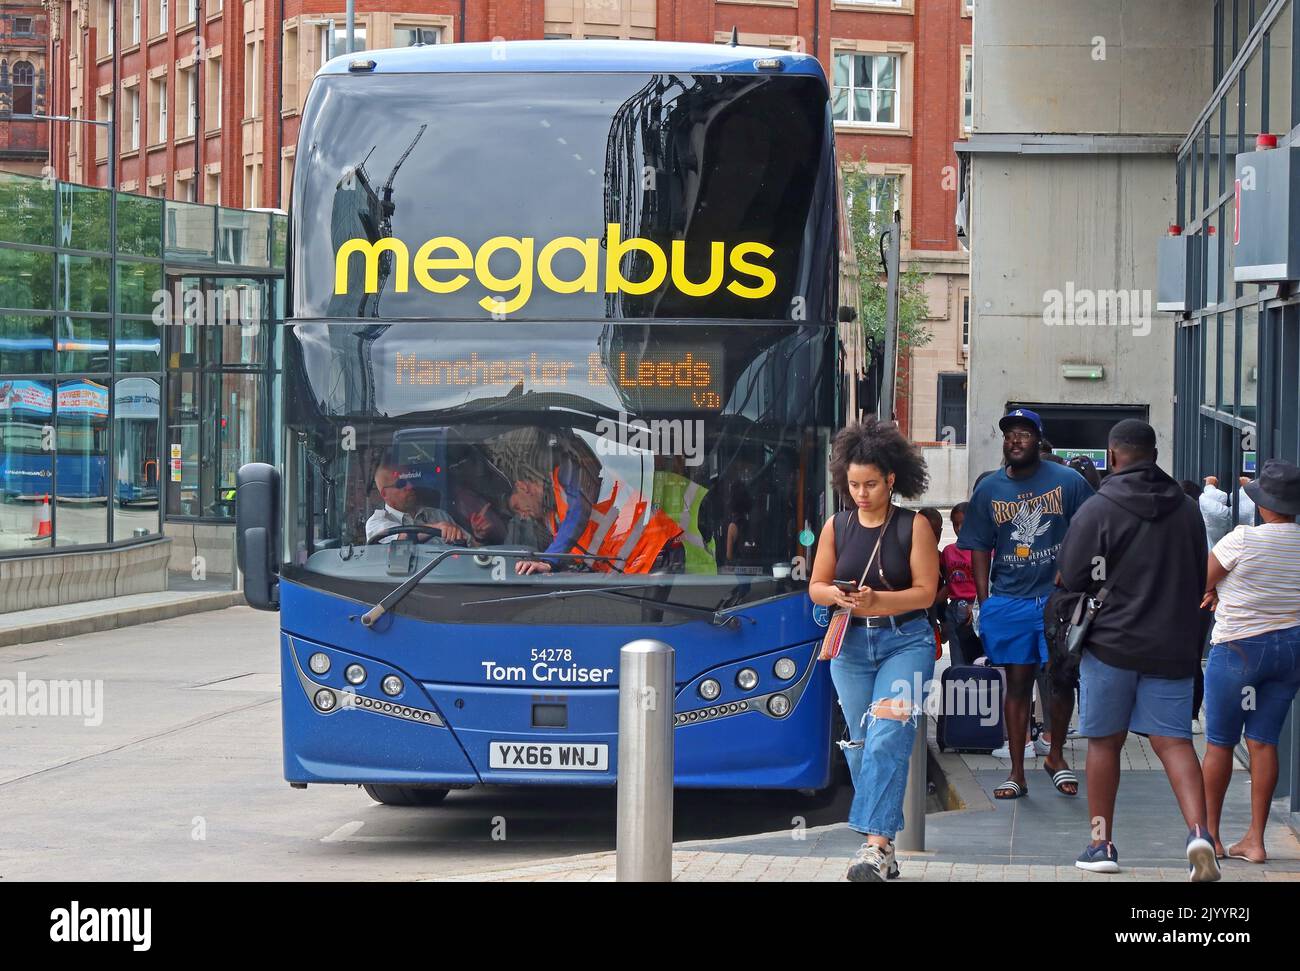 Von Megabus nach Leeds , Busbahnhof und Umsteigestelle Shudehill, Manchester, England, Vereinigtes Königreich, M4 2AF, Tom Cruiser, YX66 WNJ Stockfoto